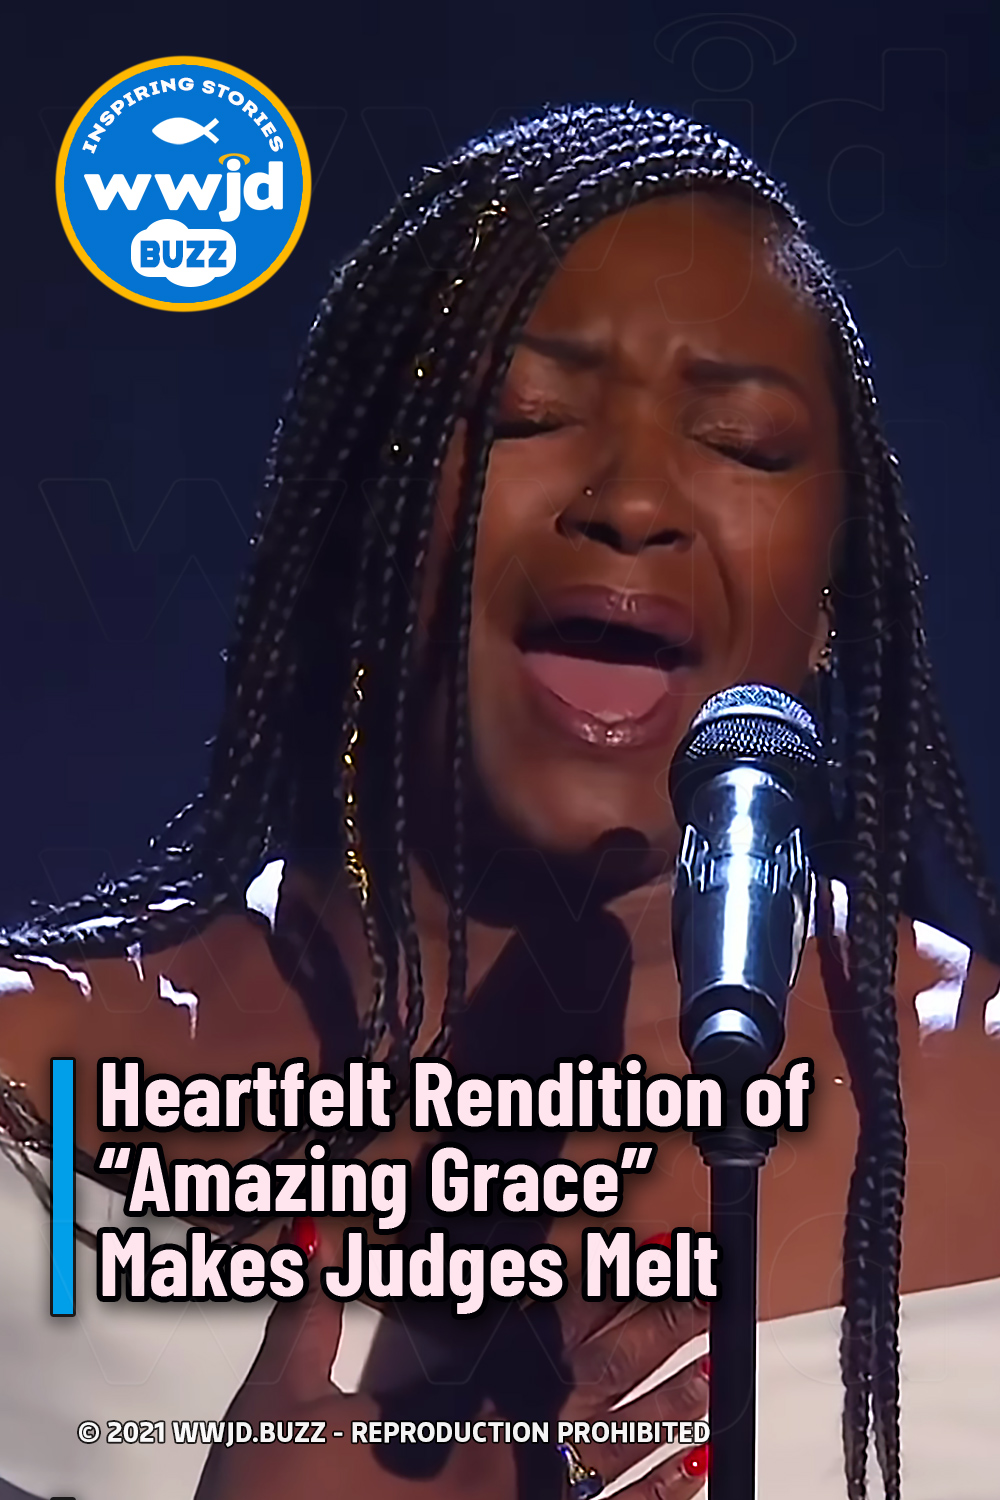 Heartfelt Rendition of “Amazing Grace” Makes Judges Melt